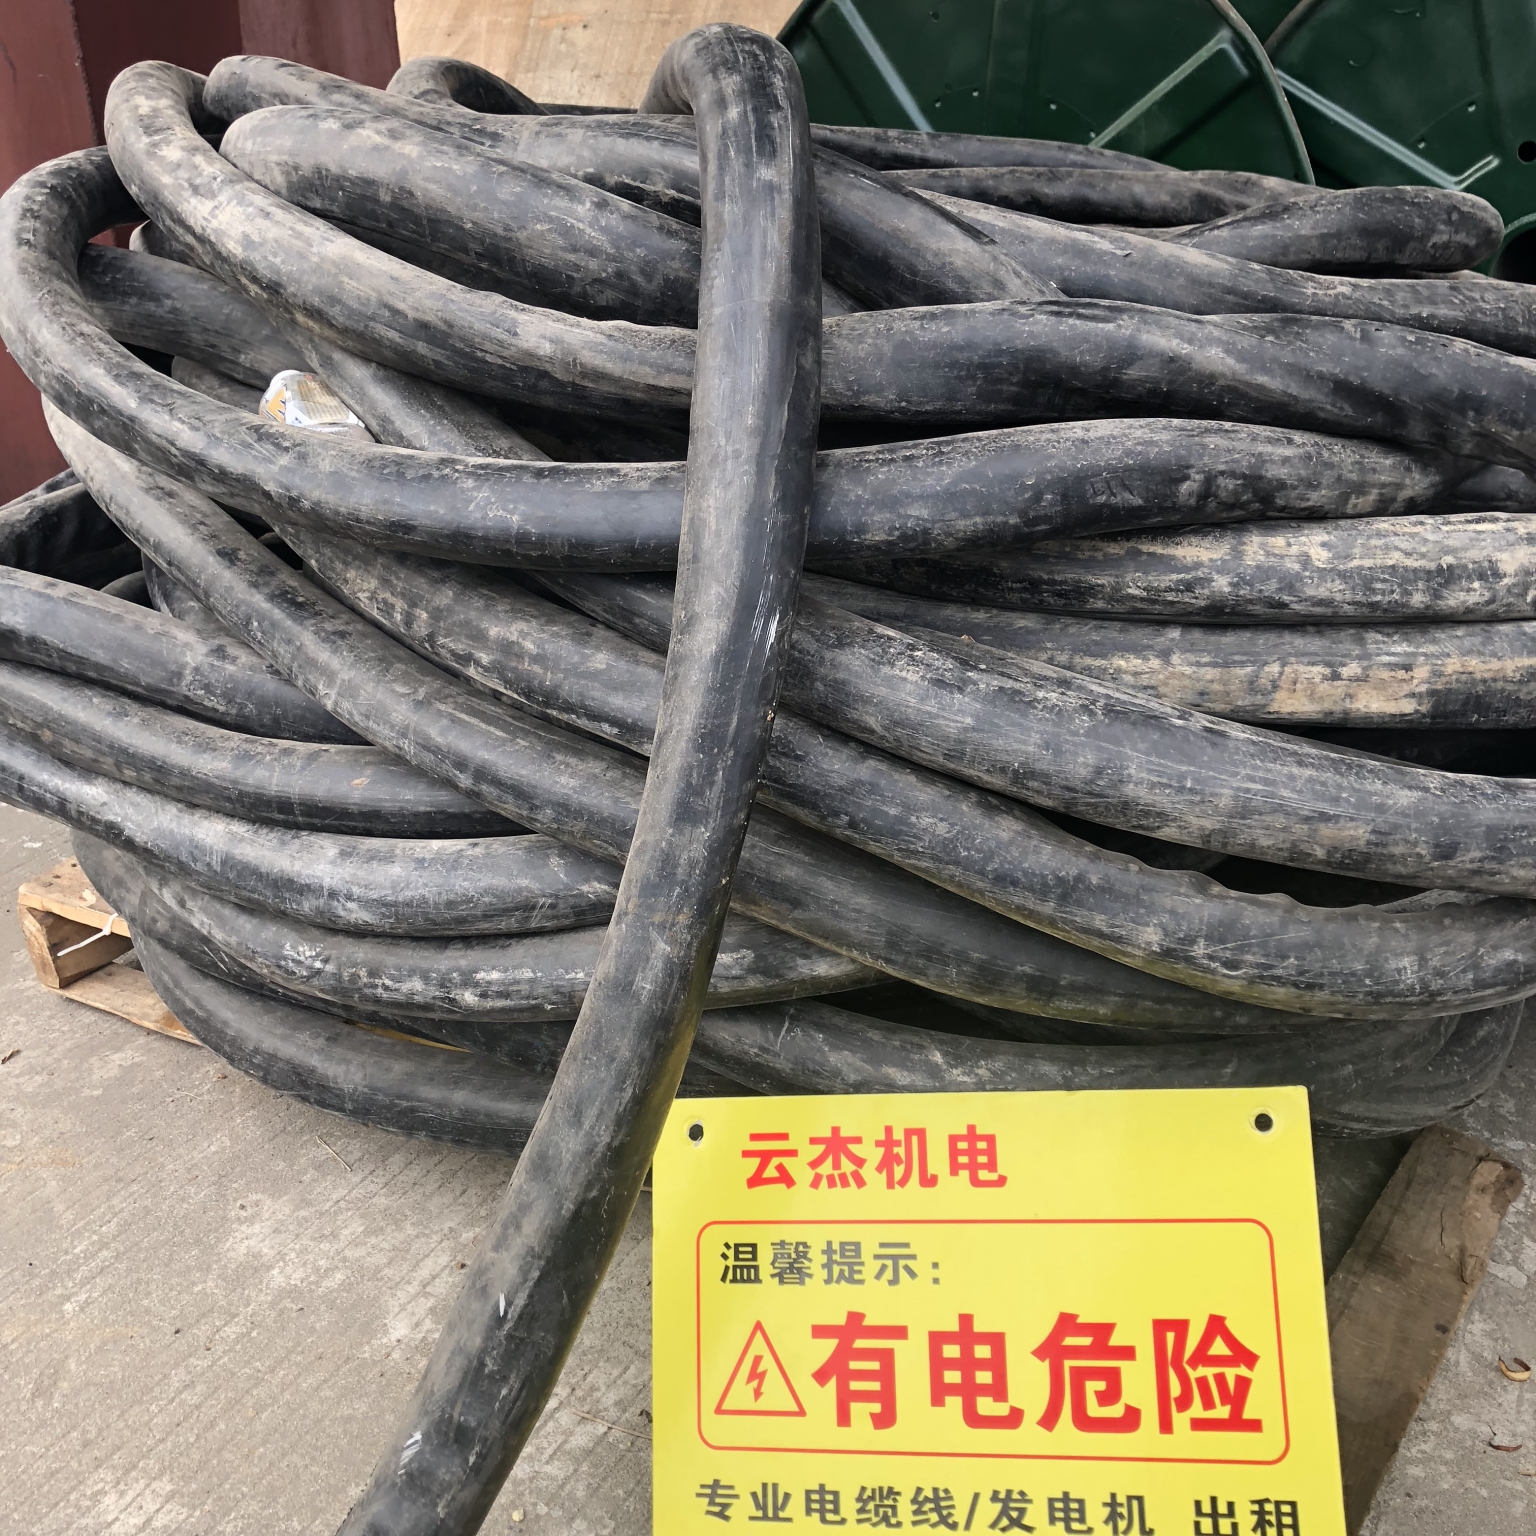 湛江美食城专用电缆线出租热线-哪有-临时出租价格图片